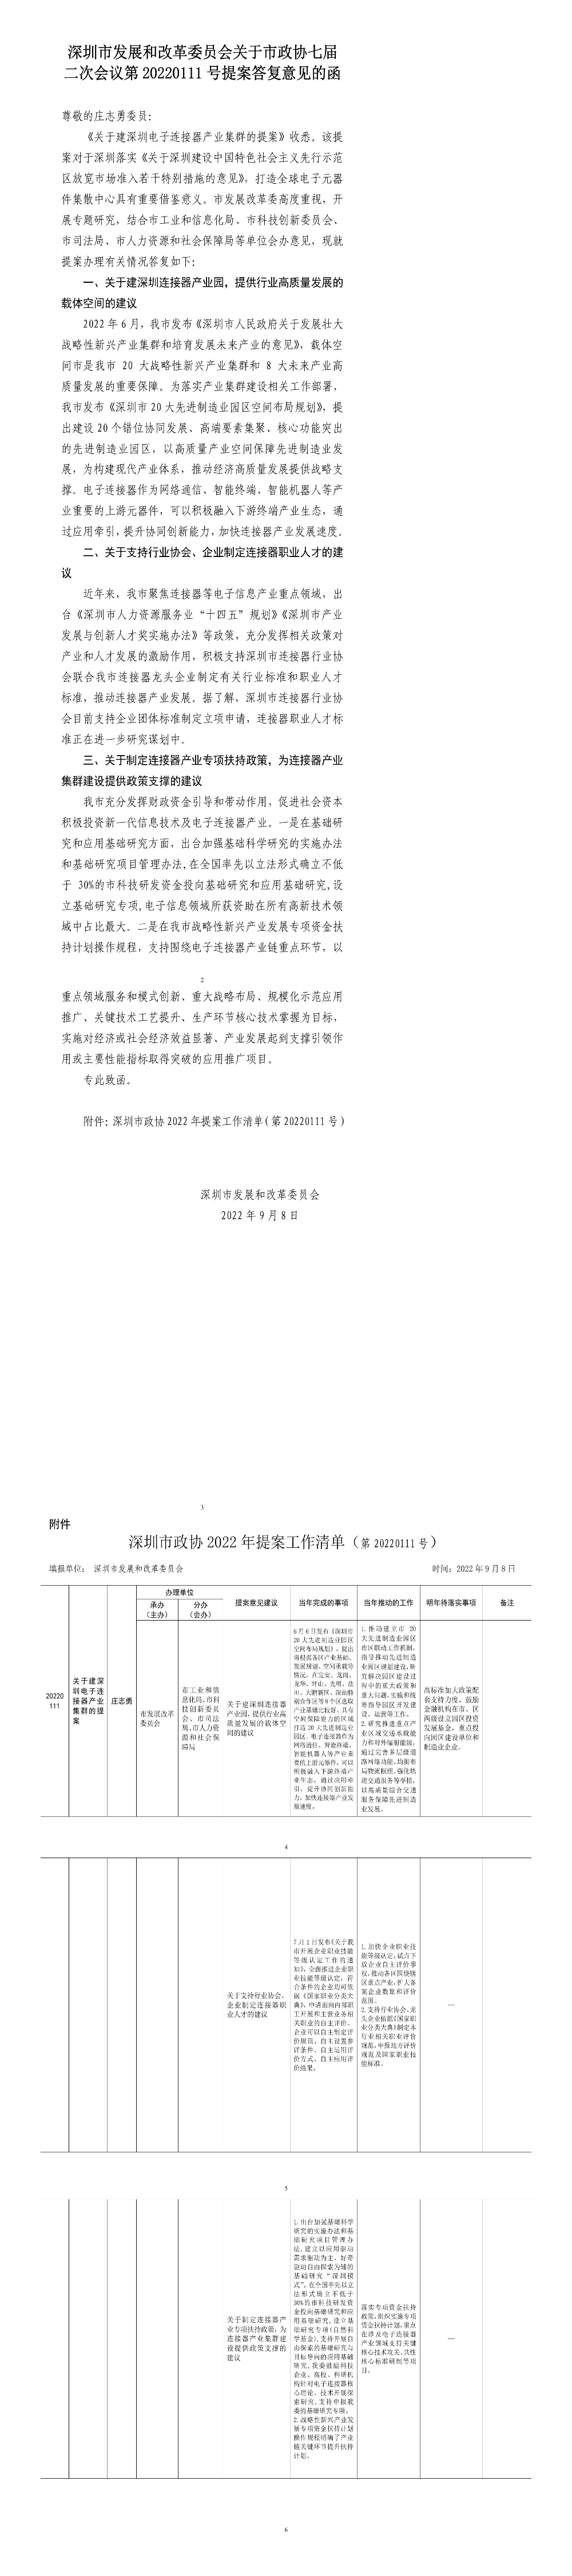 深圳市发展和改革委员会关于市政协七届二次会议第20220111号提案答复意见的函.jpg